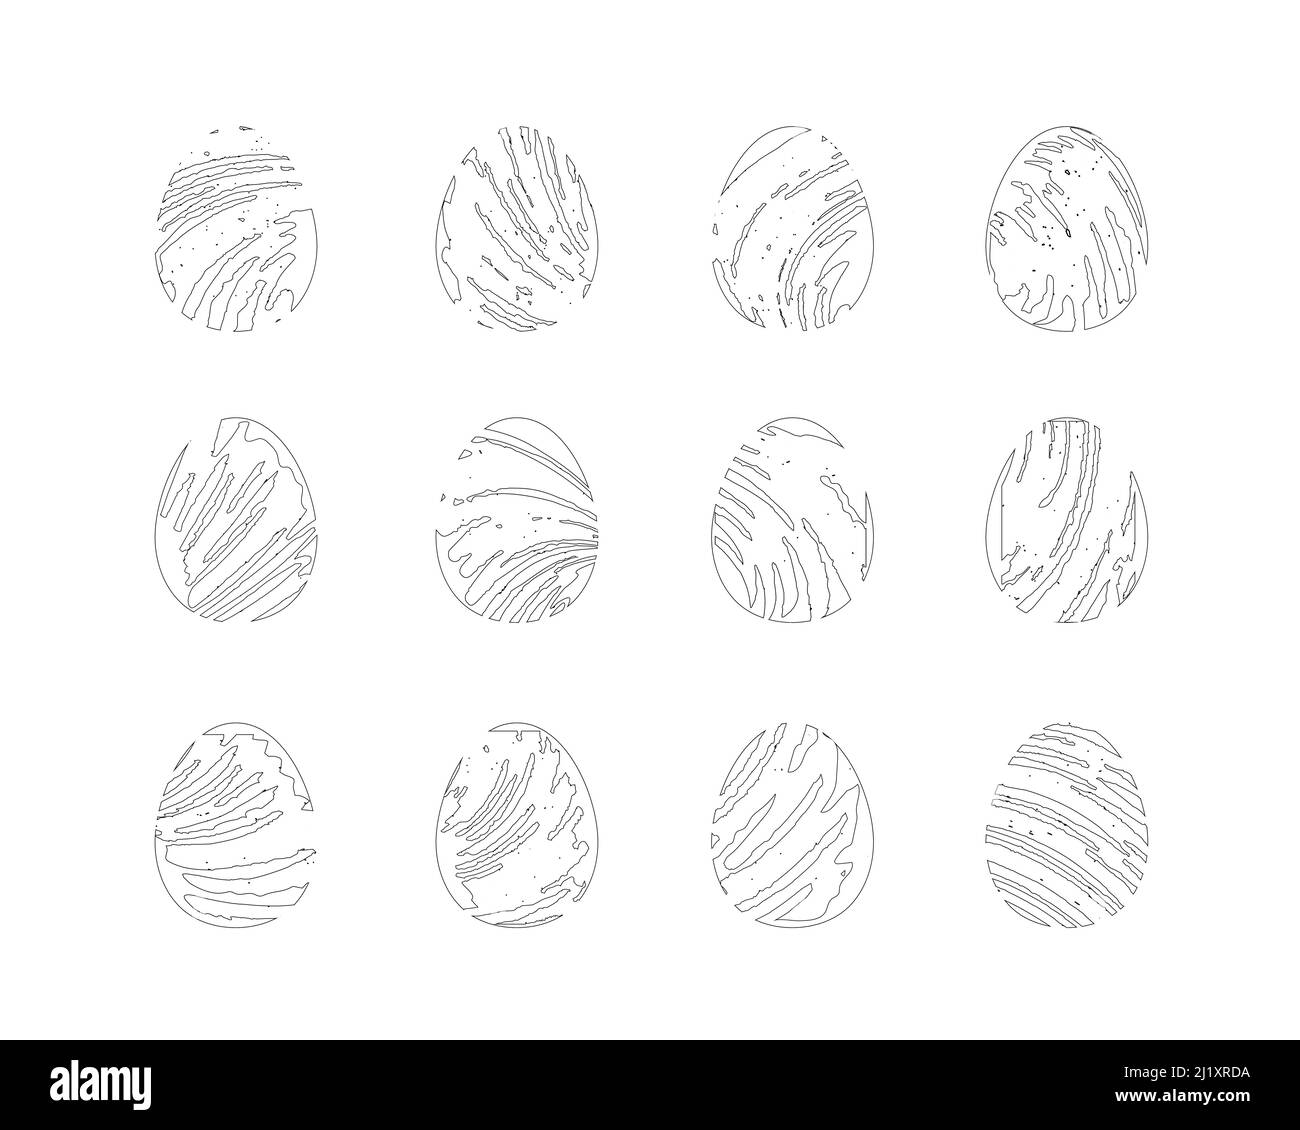 Oeufs de Pâques en traits d'esquisse. Symboles artistiques dessinés à la main. Ensemble d'images vectorielles noir et blanc Illustration de Vecteur